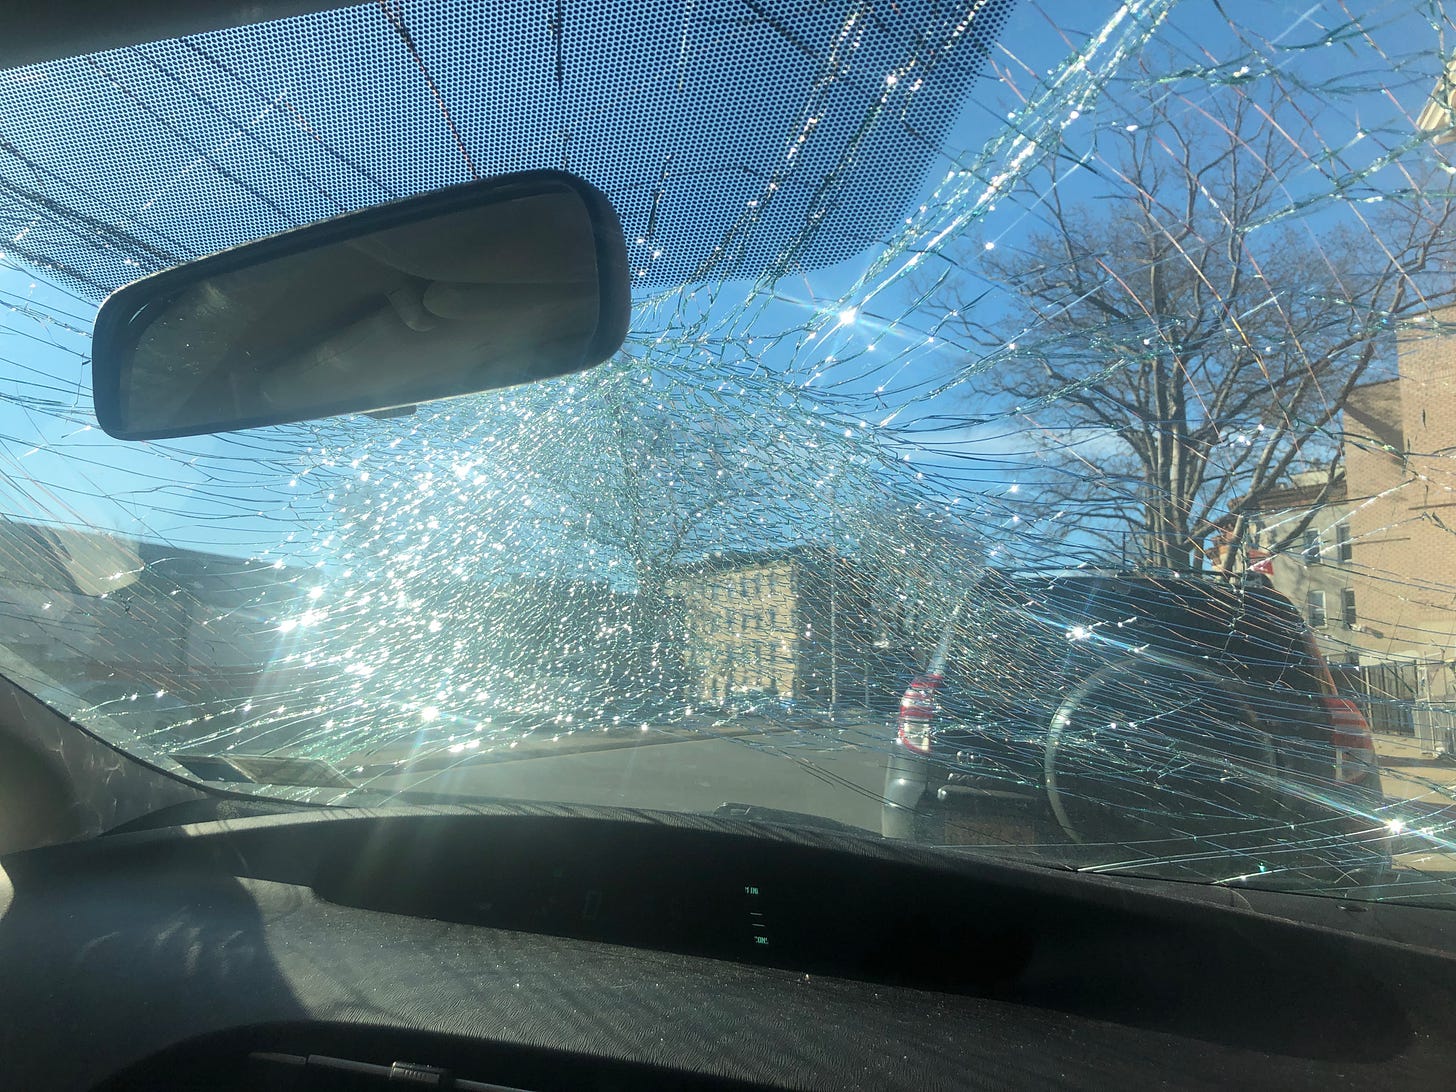 smashed windshield